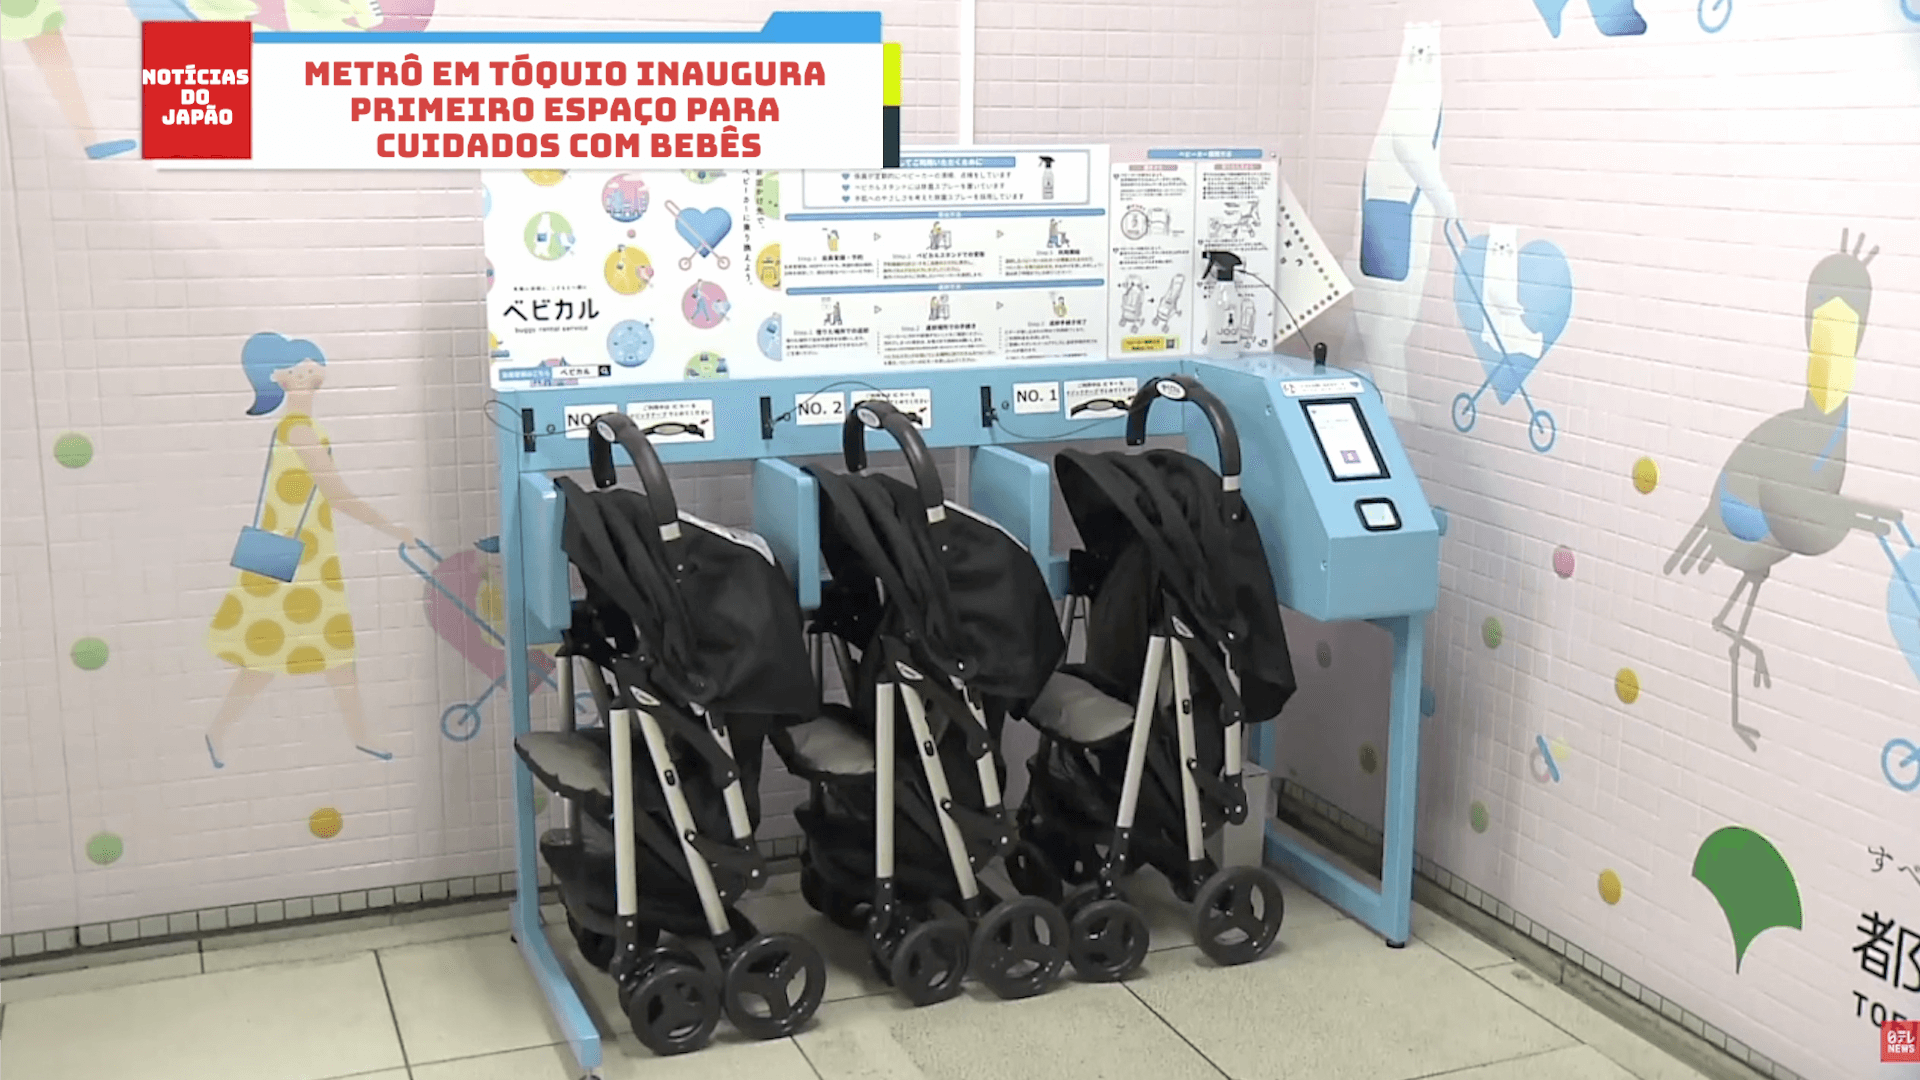 Metrô em Tóquio inaugura primeiro espaço para cuidados com bebês  